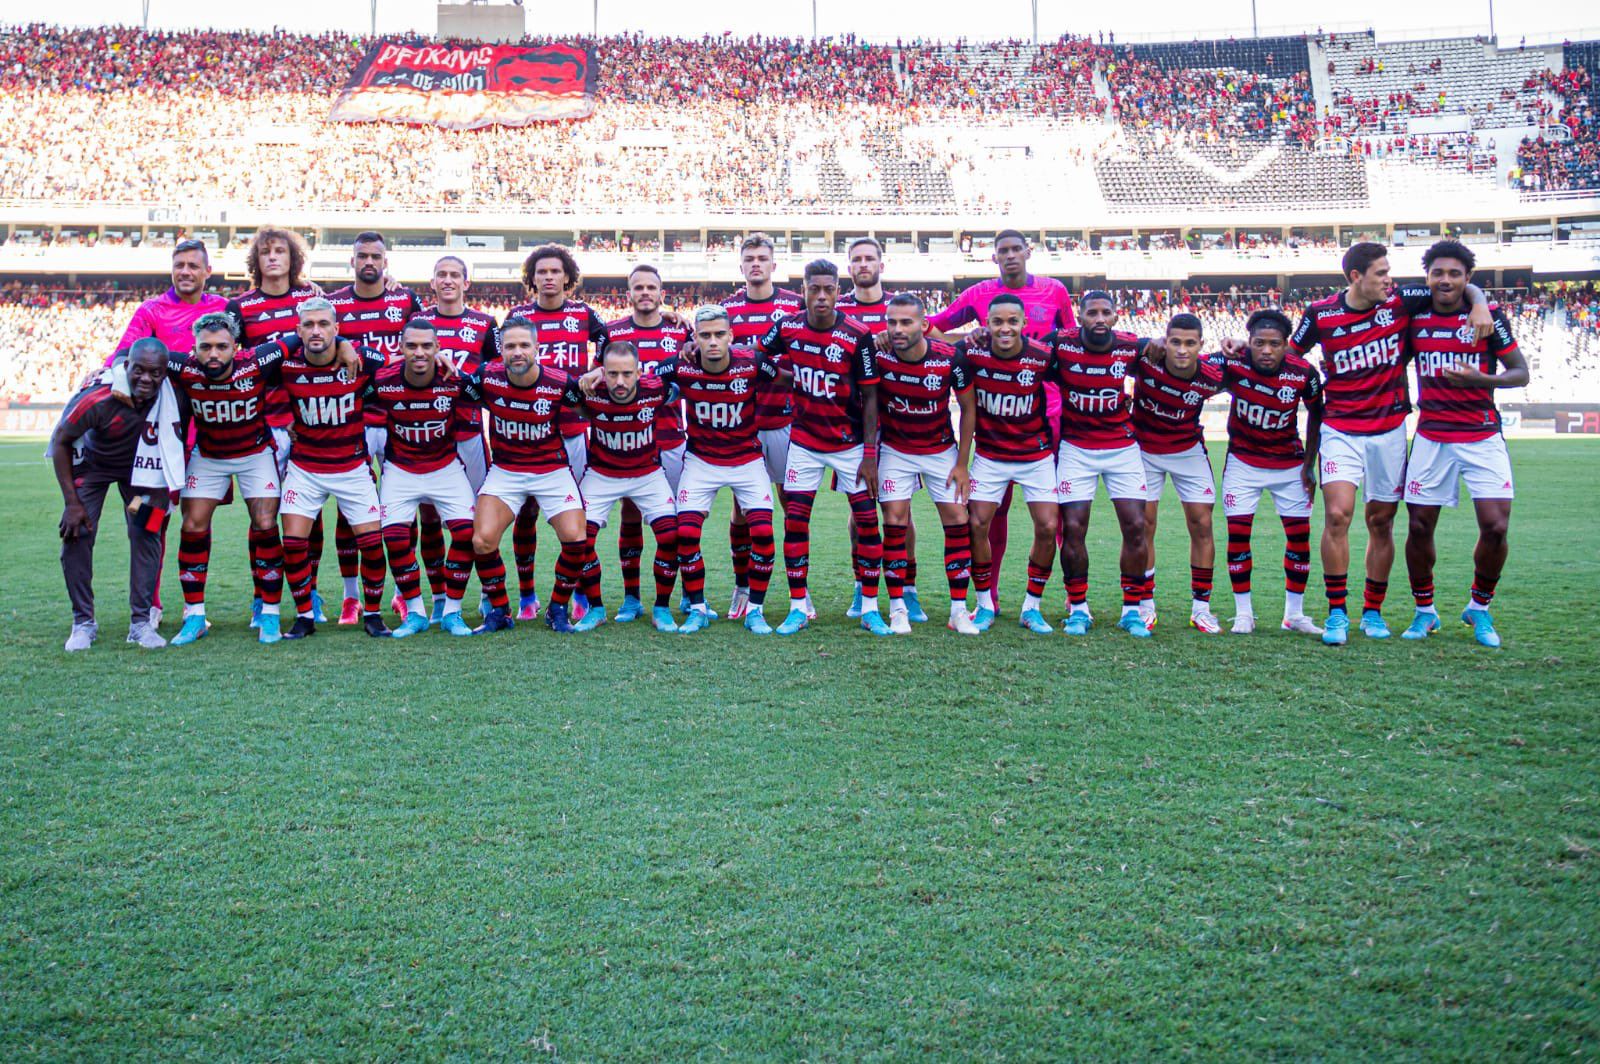 Foto: Paula Reis/ Flamengo